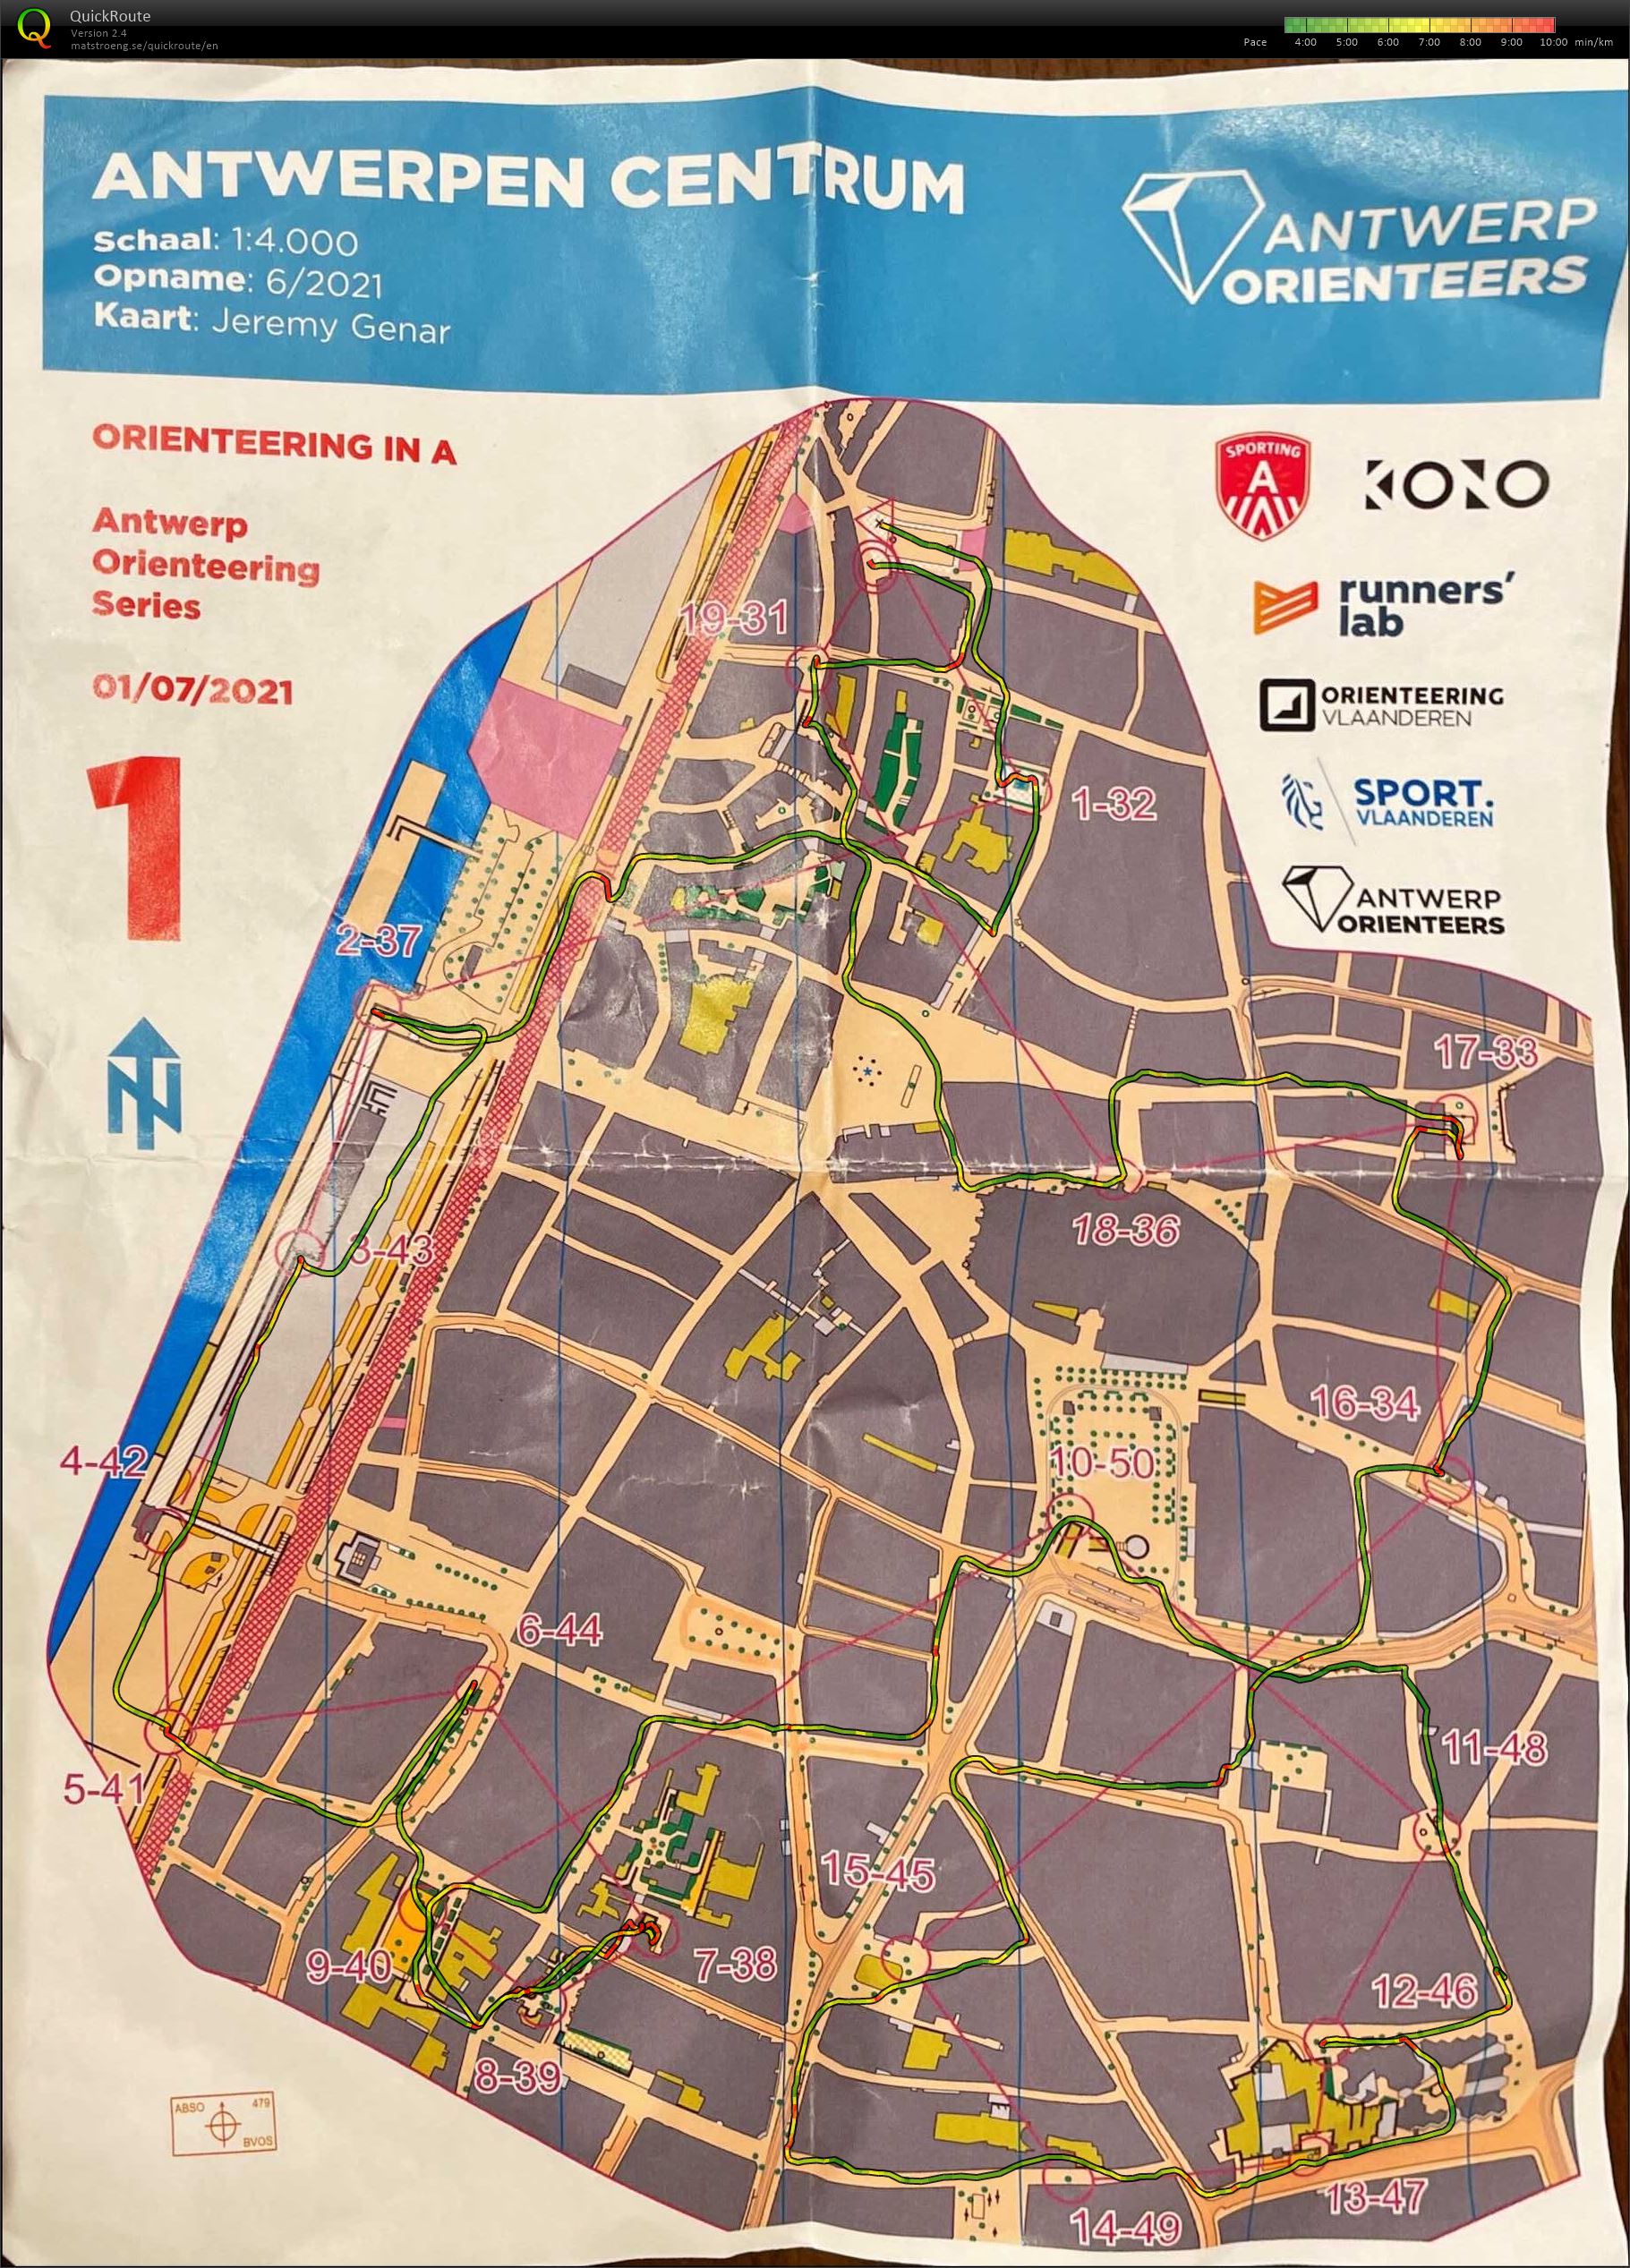 Antwerp Orienteering Series - Antwerpen Centrum - 5K (01/07/2021)